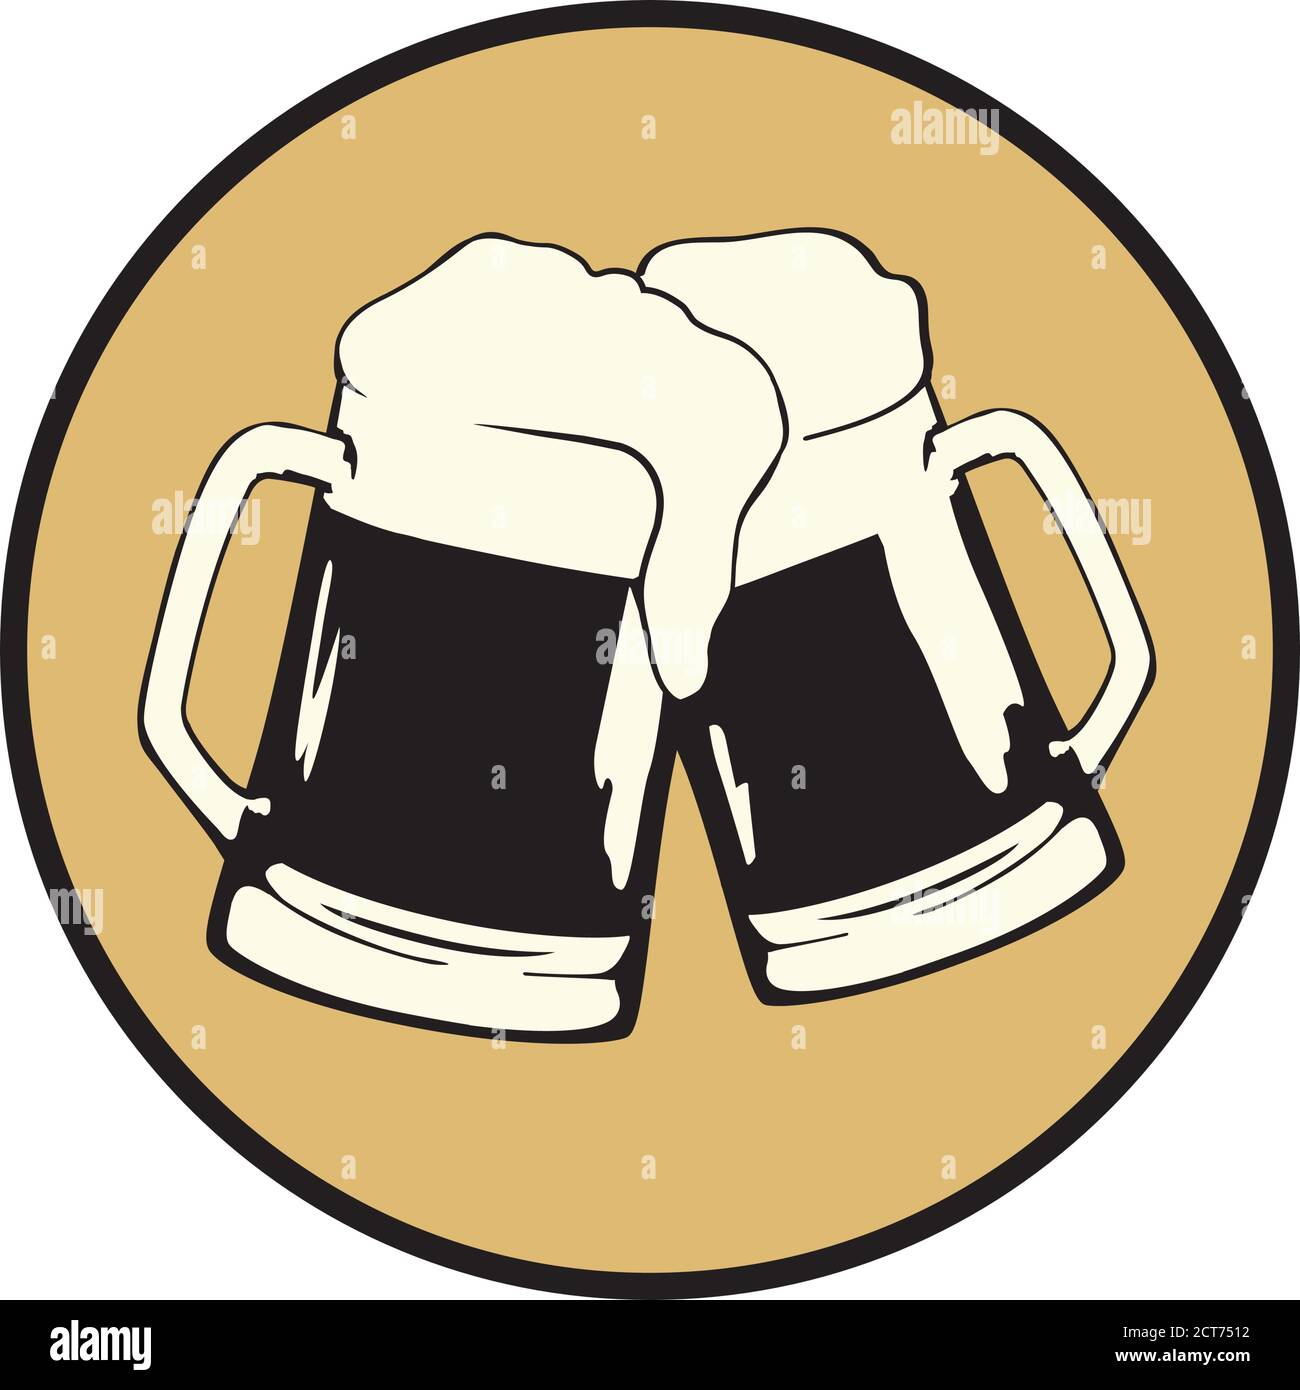 glass of beer, vector Stock Vector Image & Art - Alamy